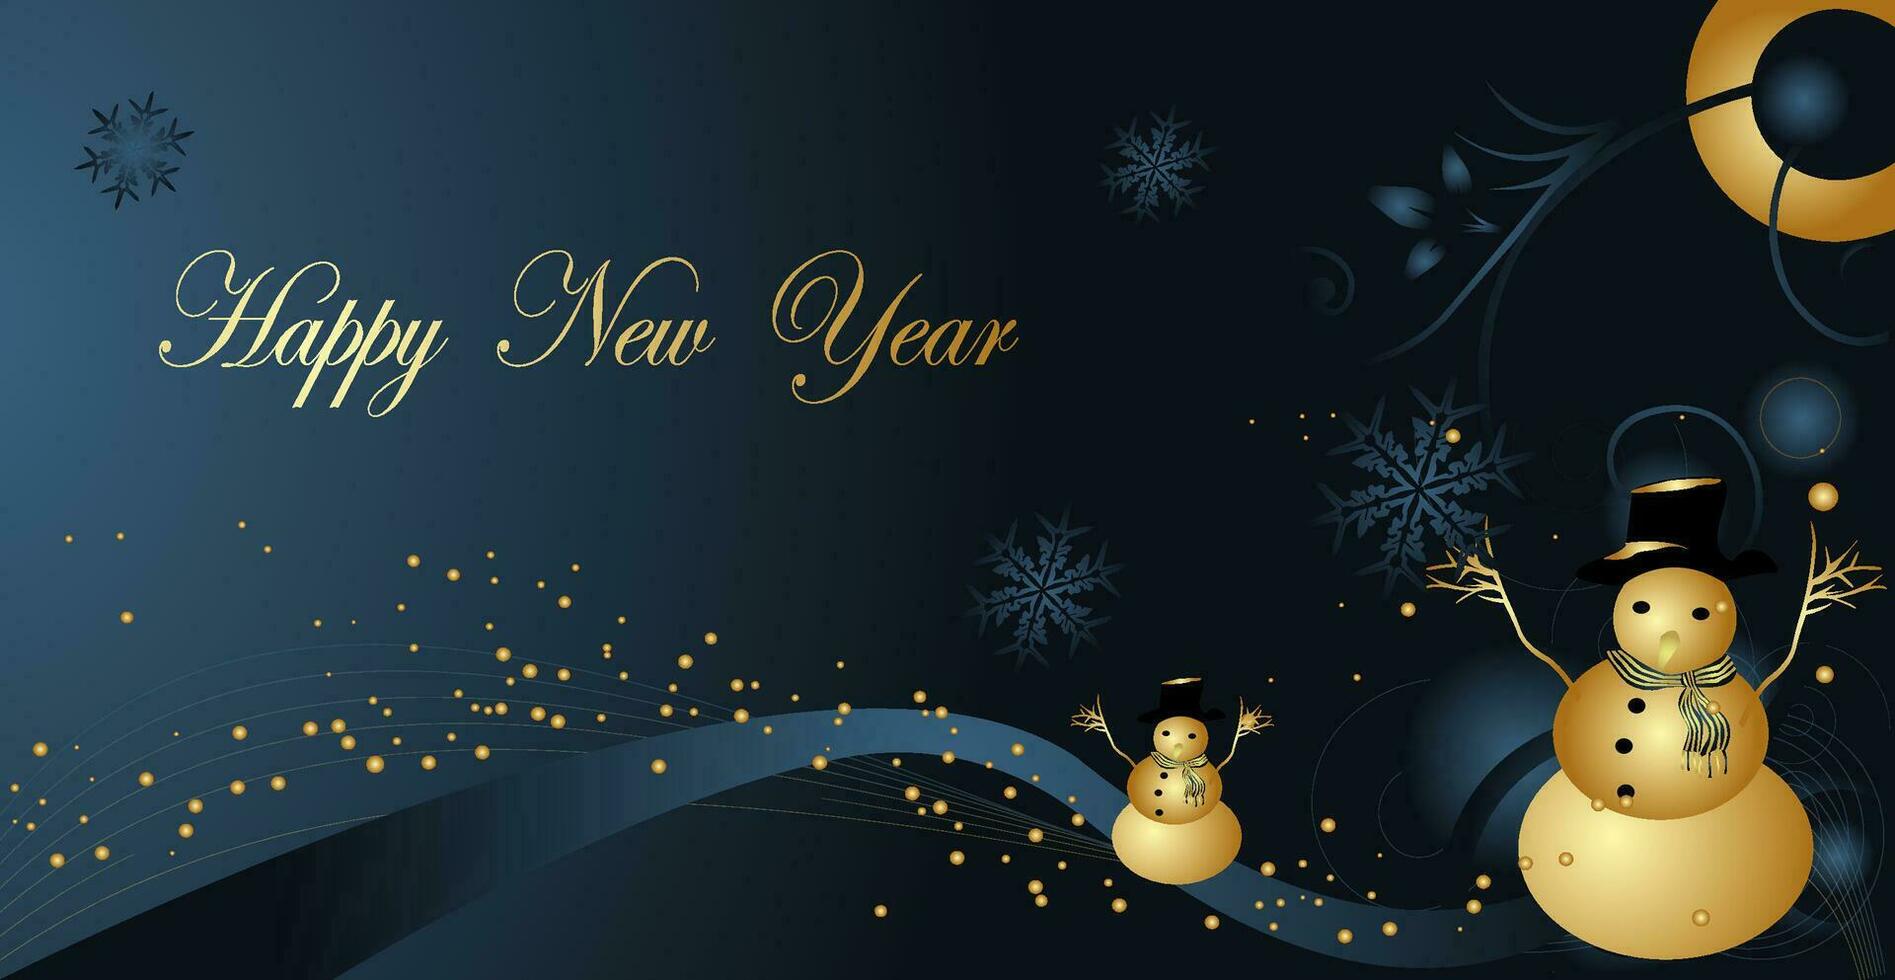 fondo de navidad de lujo. diseño navideño de guirnaldas de luces brillantes, con decoraciones realistas de árboles de navidad, copos de nieve negros y dorados y confeti dorado brillante. vector